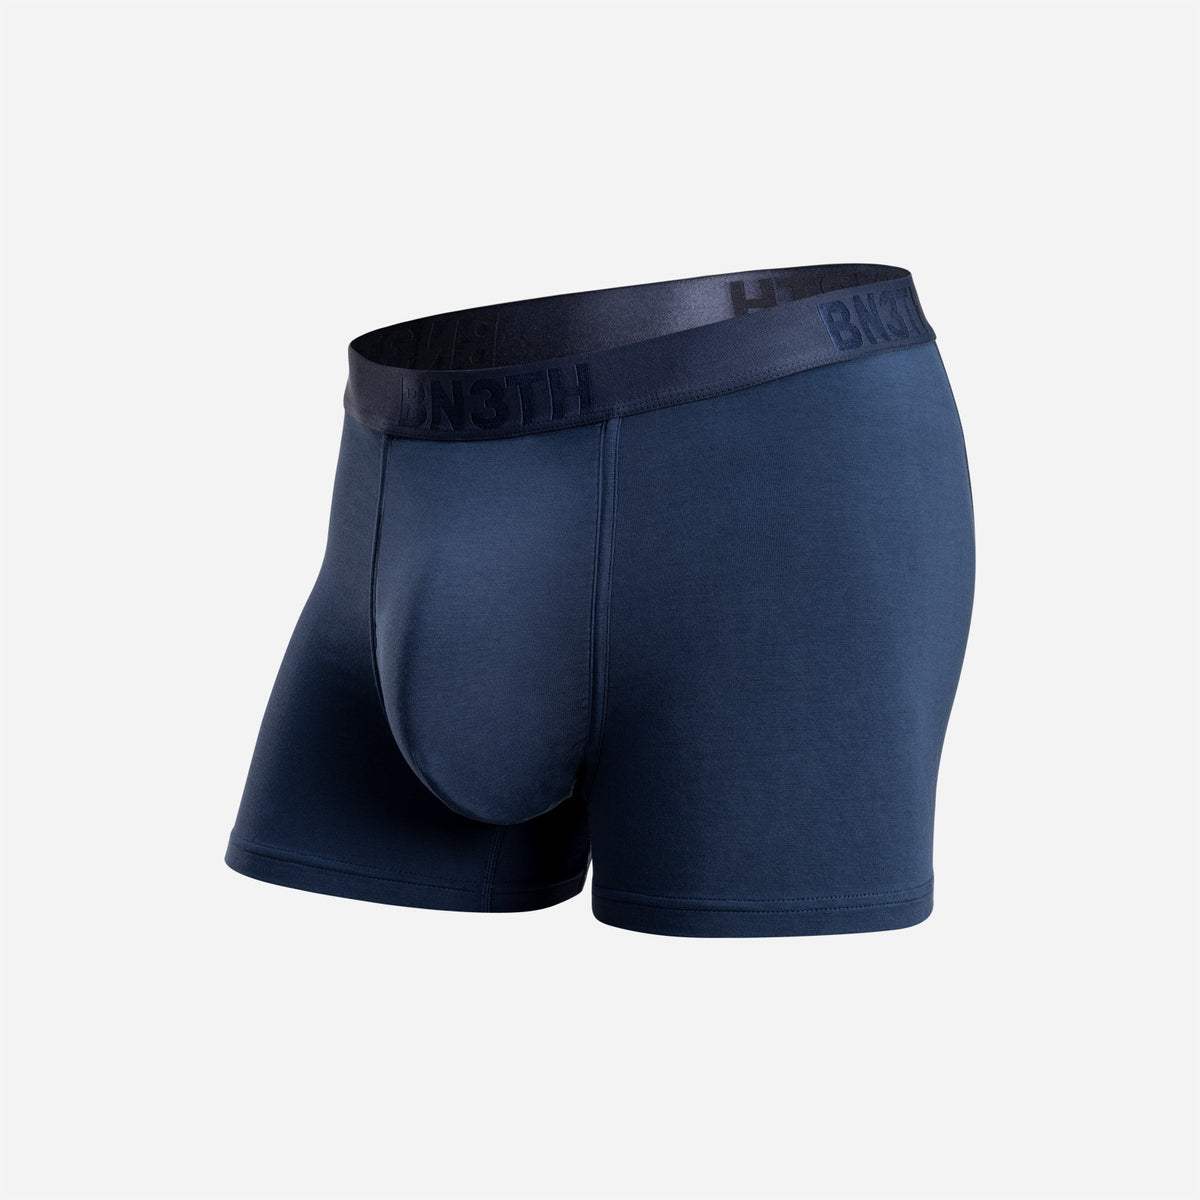 FRIGO Navy Blue Adjustable Pouch 3 Trunk Underwear New in Box